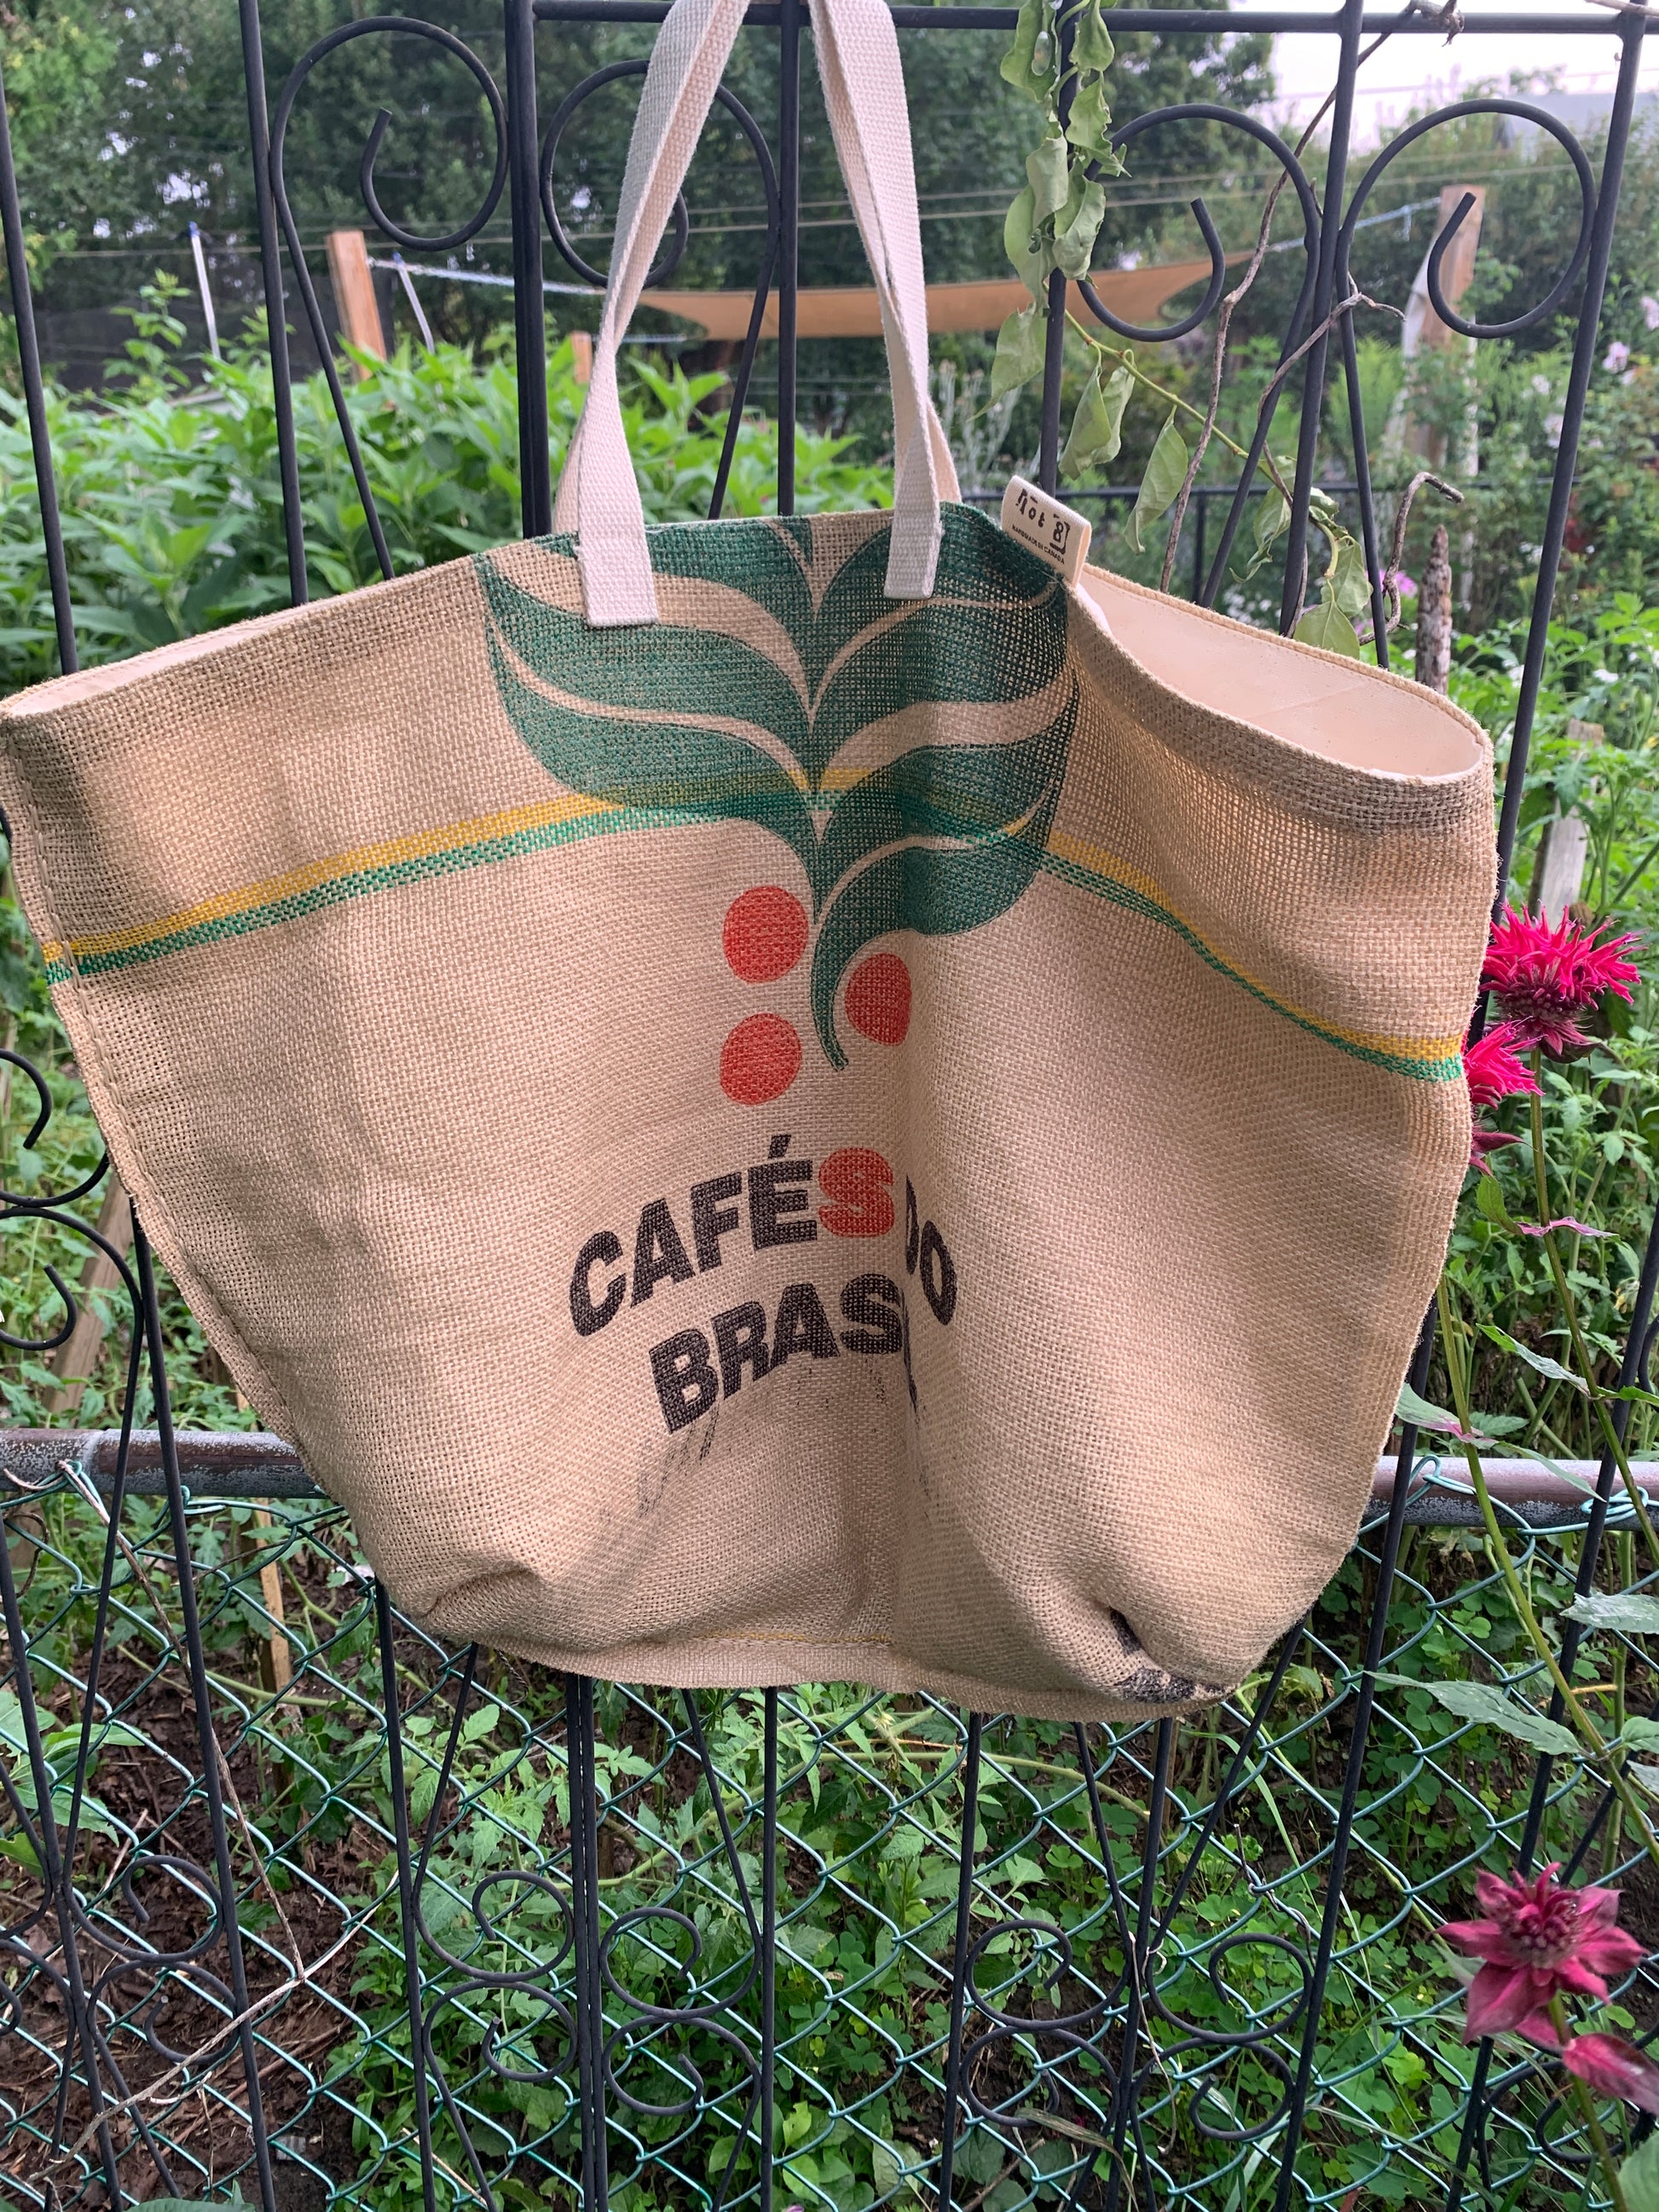 Recycled plastic bag - tote bag - market bag - handmade upcycled bag -  green bag